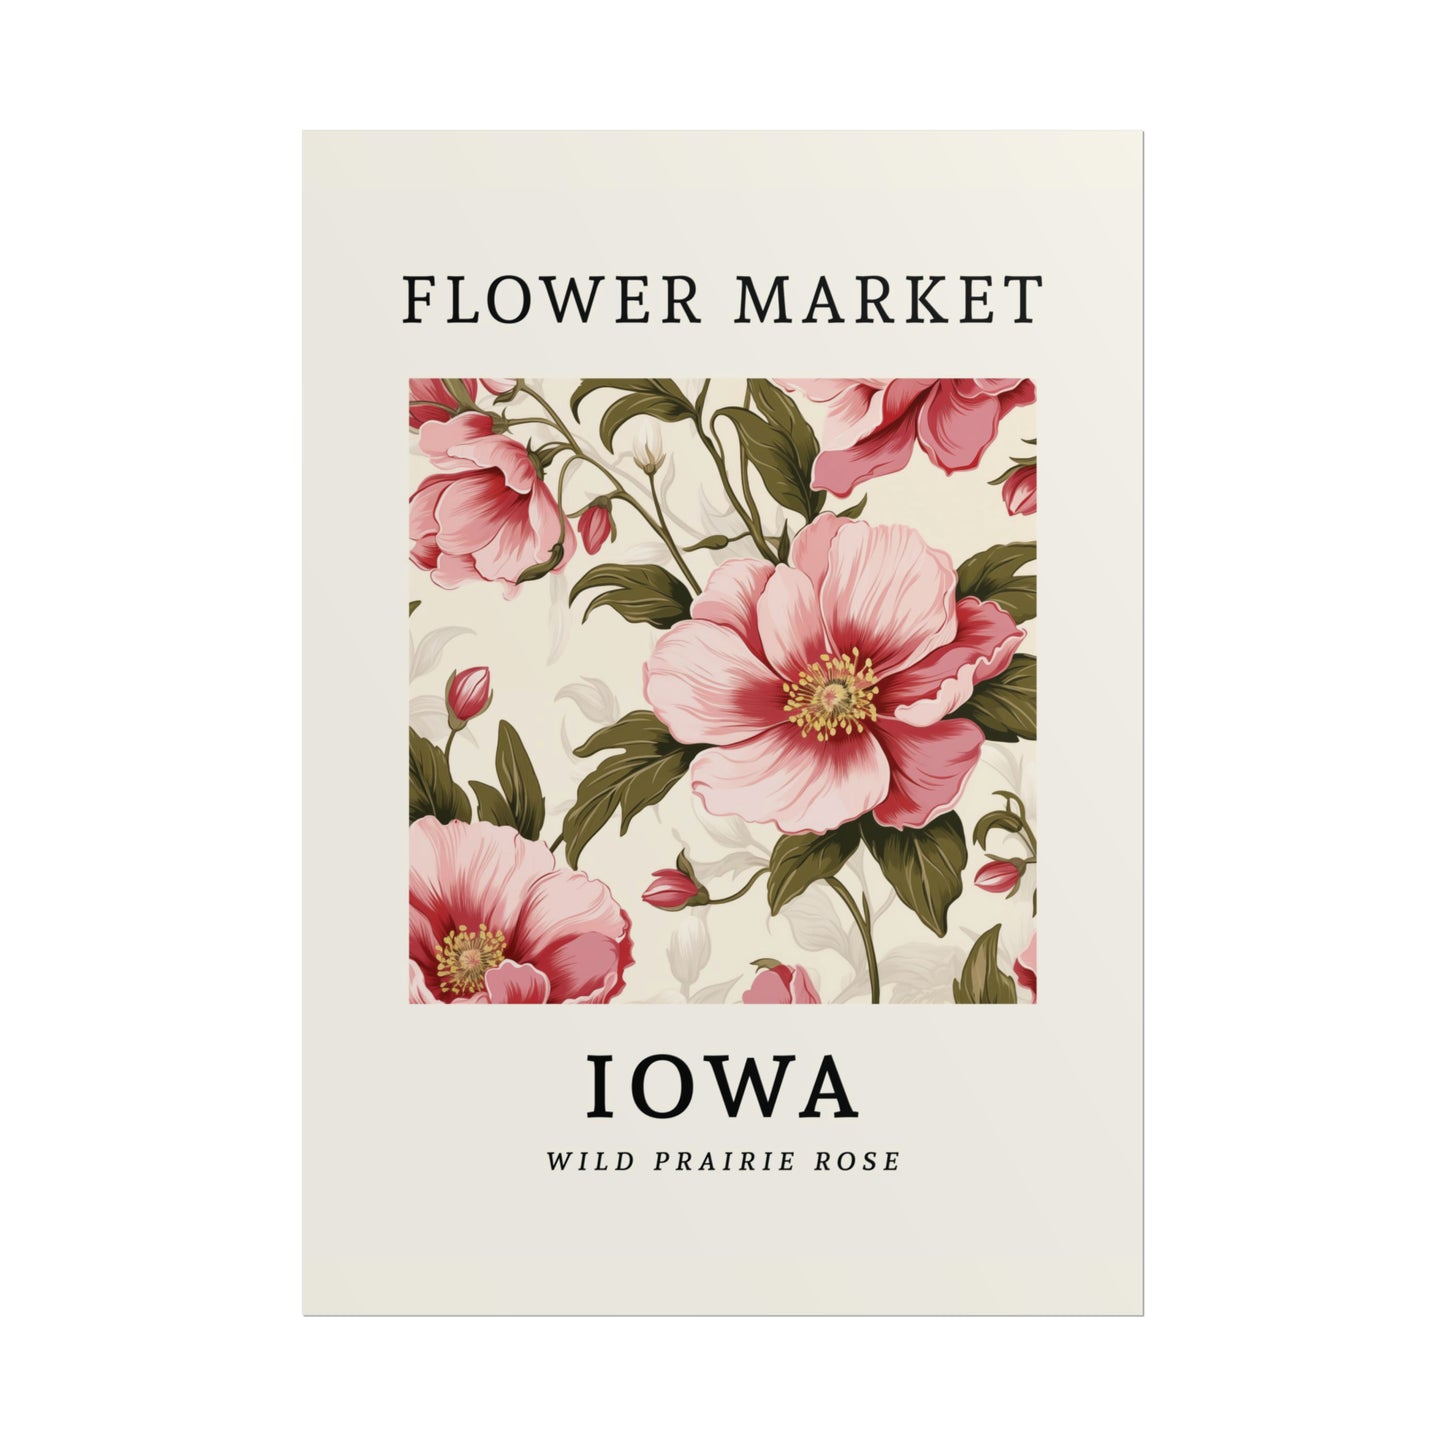 IOWA FLOWER MARKET Poster Wild Prairie Rose Print